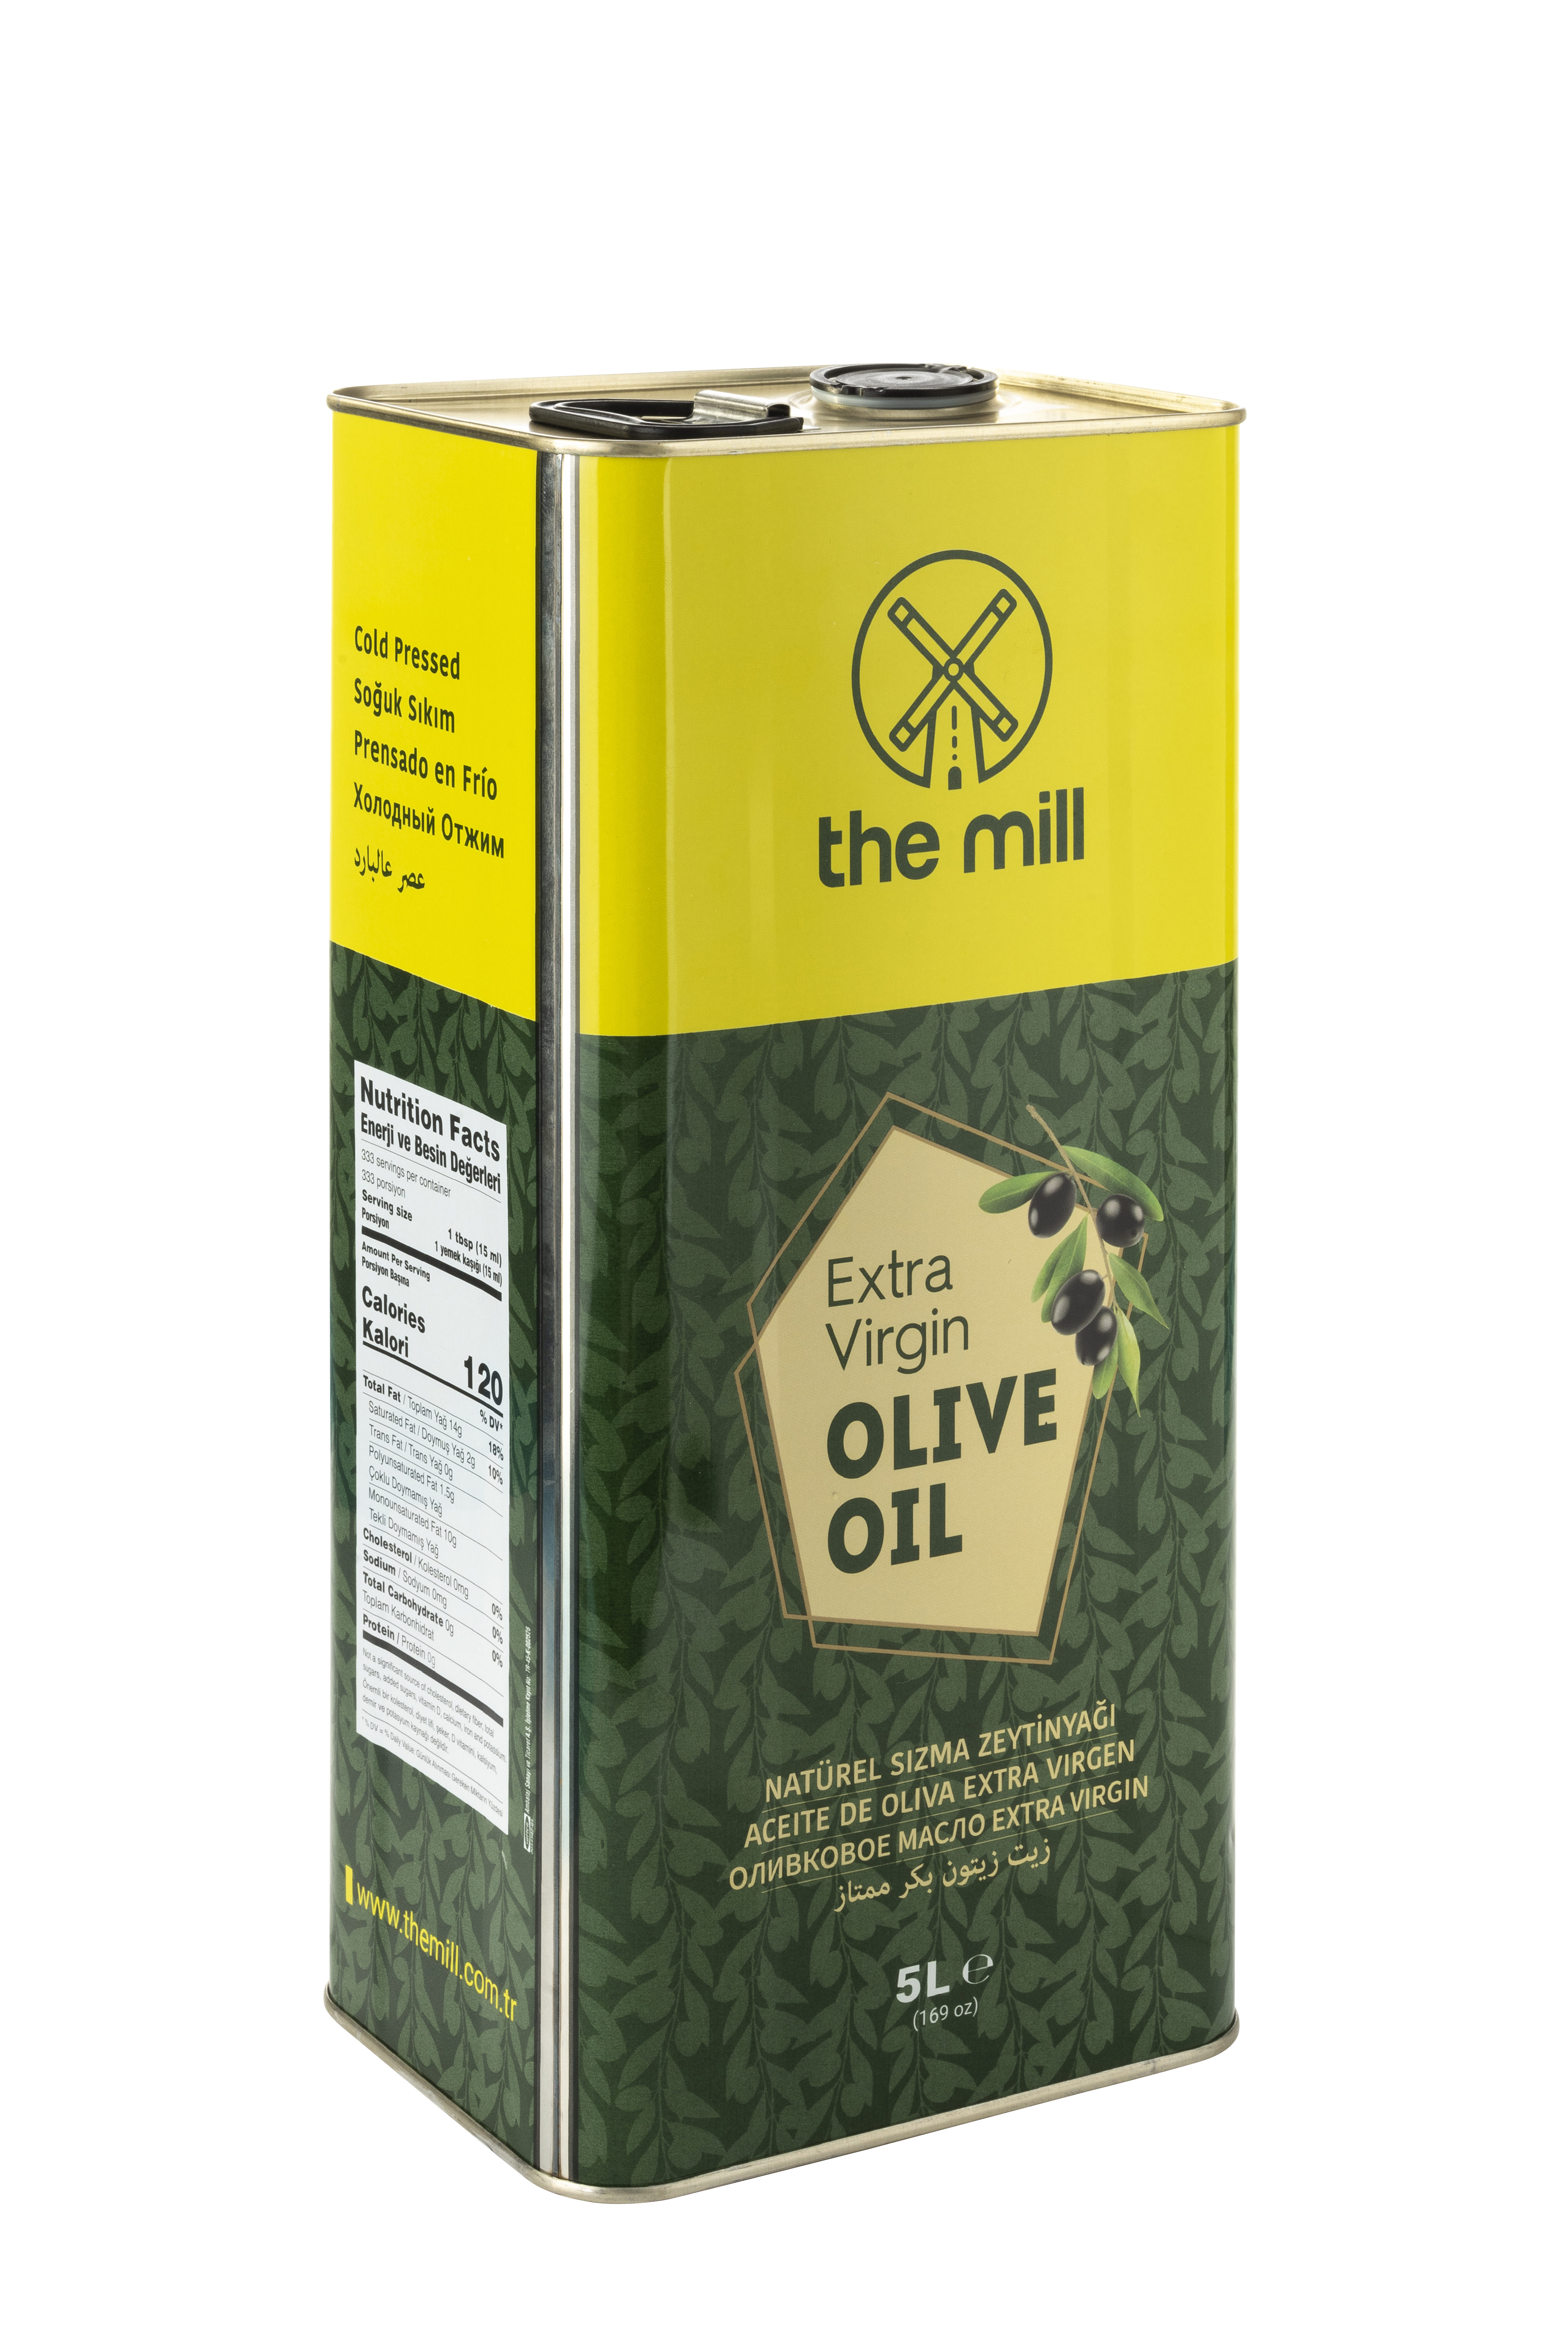 Extra Virgin Olive Oil 5л. Оливковое масло Extra Virgin 5 л. Масло оливковое 5 л Экстра Вирджин. Масло оливковое Extra Virgin 5 литров. Жарить на оливковом масле extra virgin